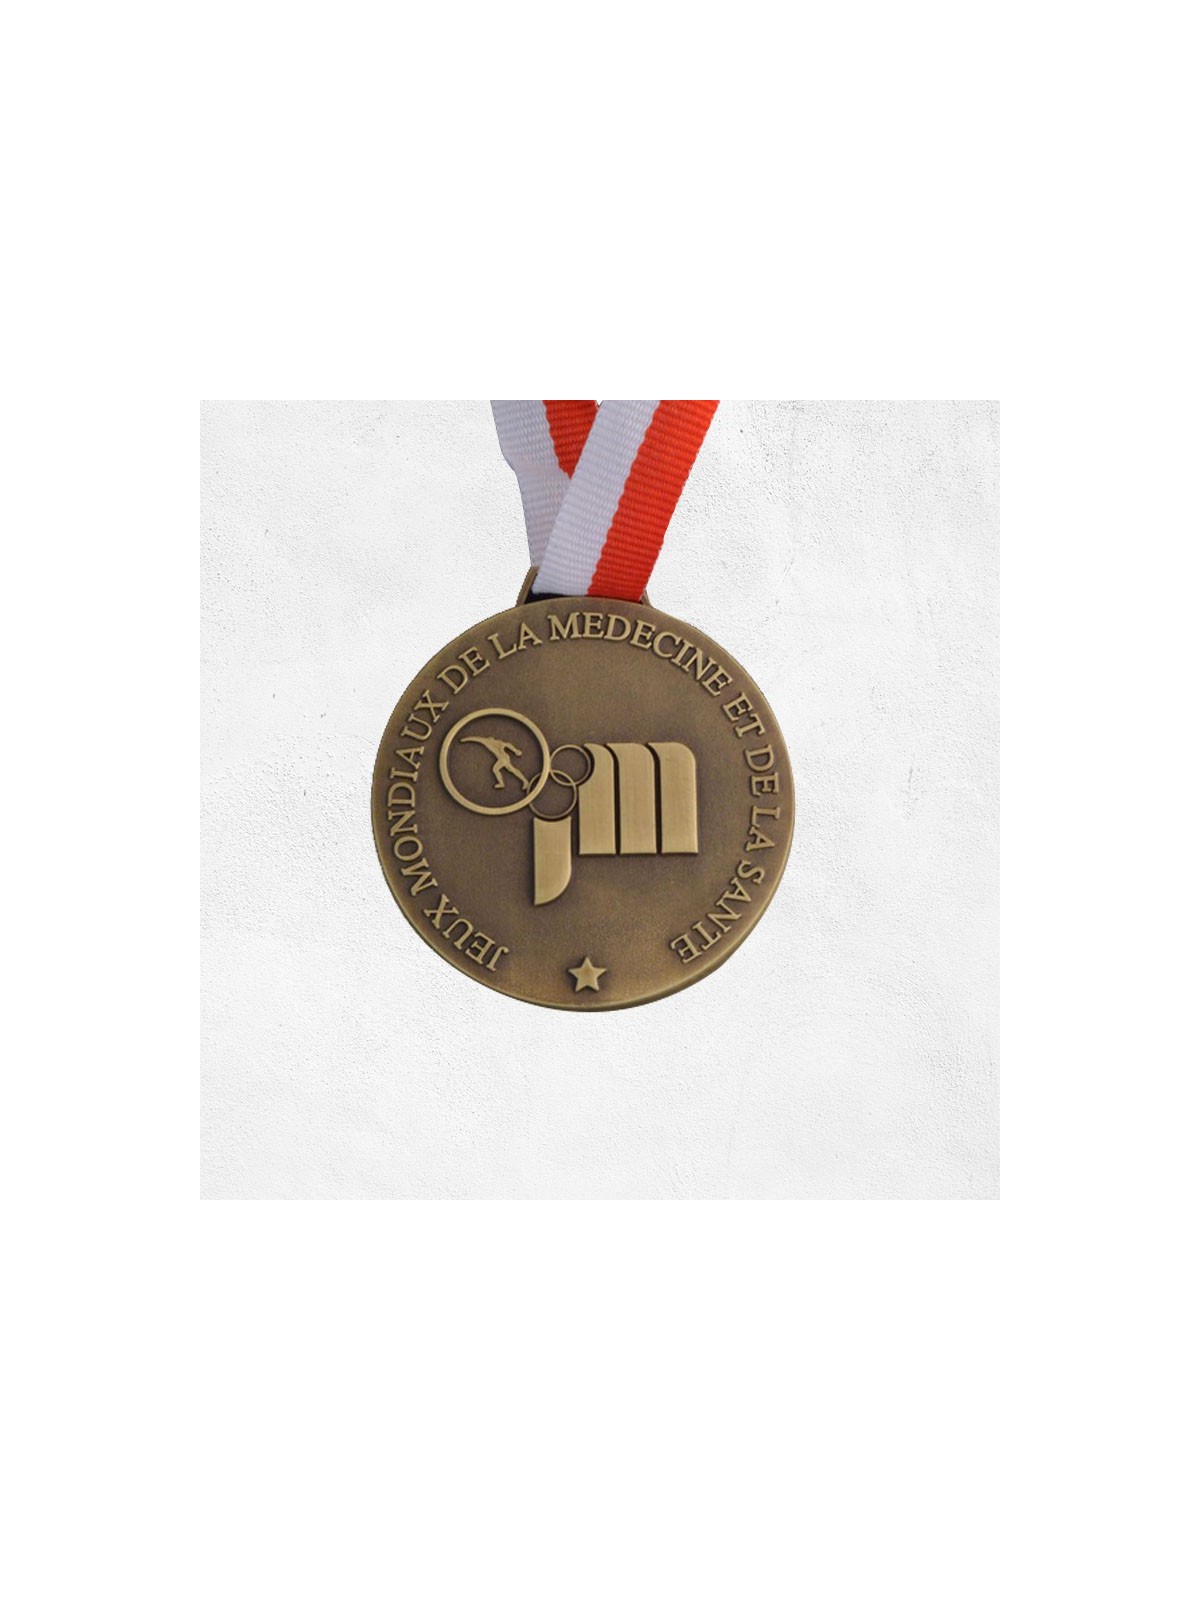 66-009 Médaille 2D personnalisé